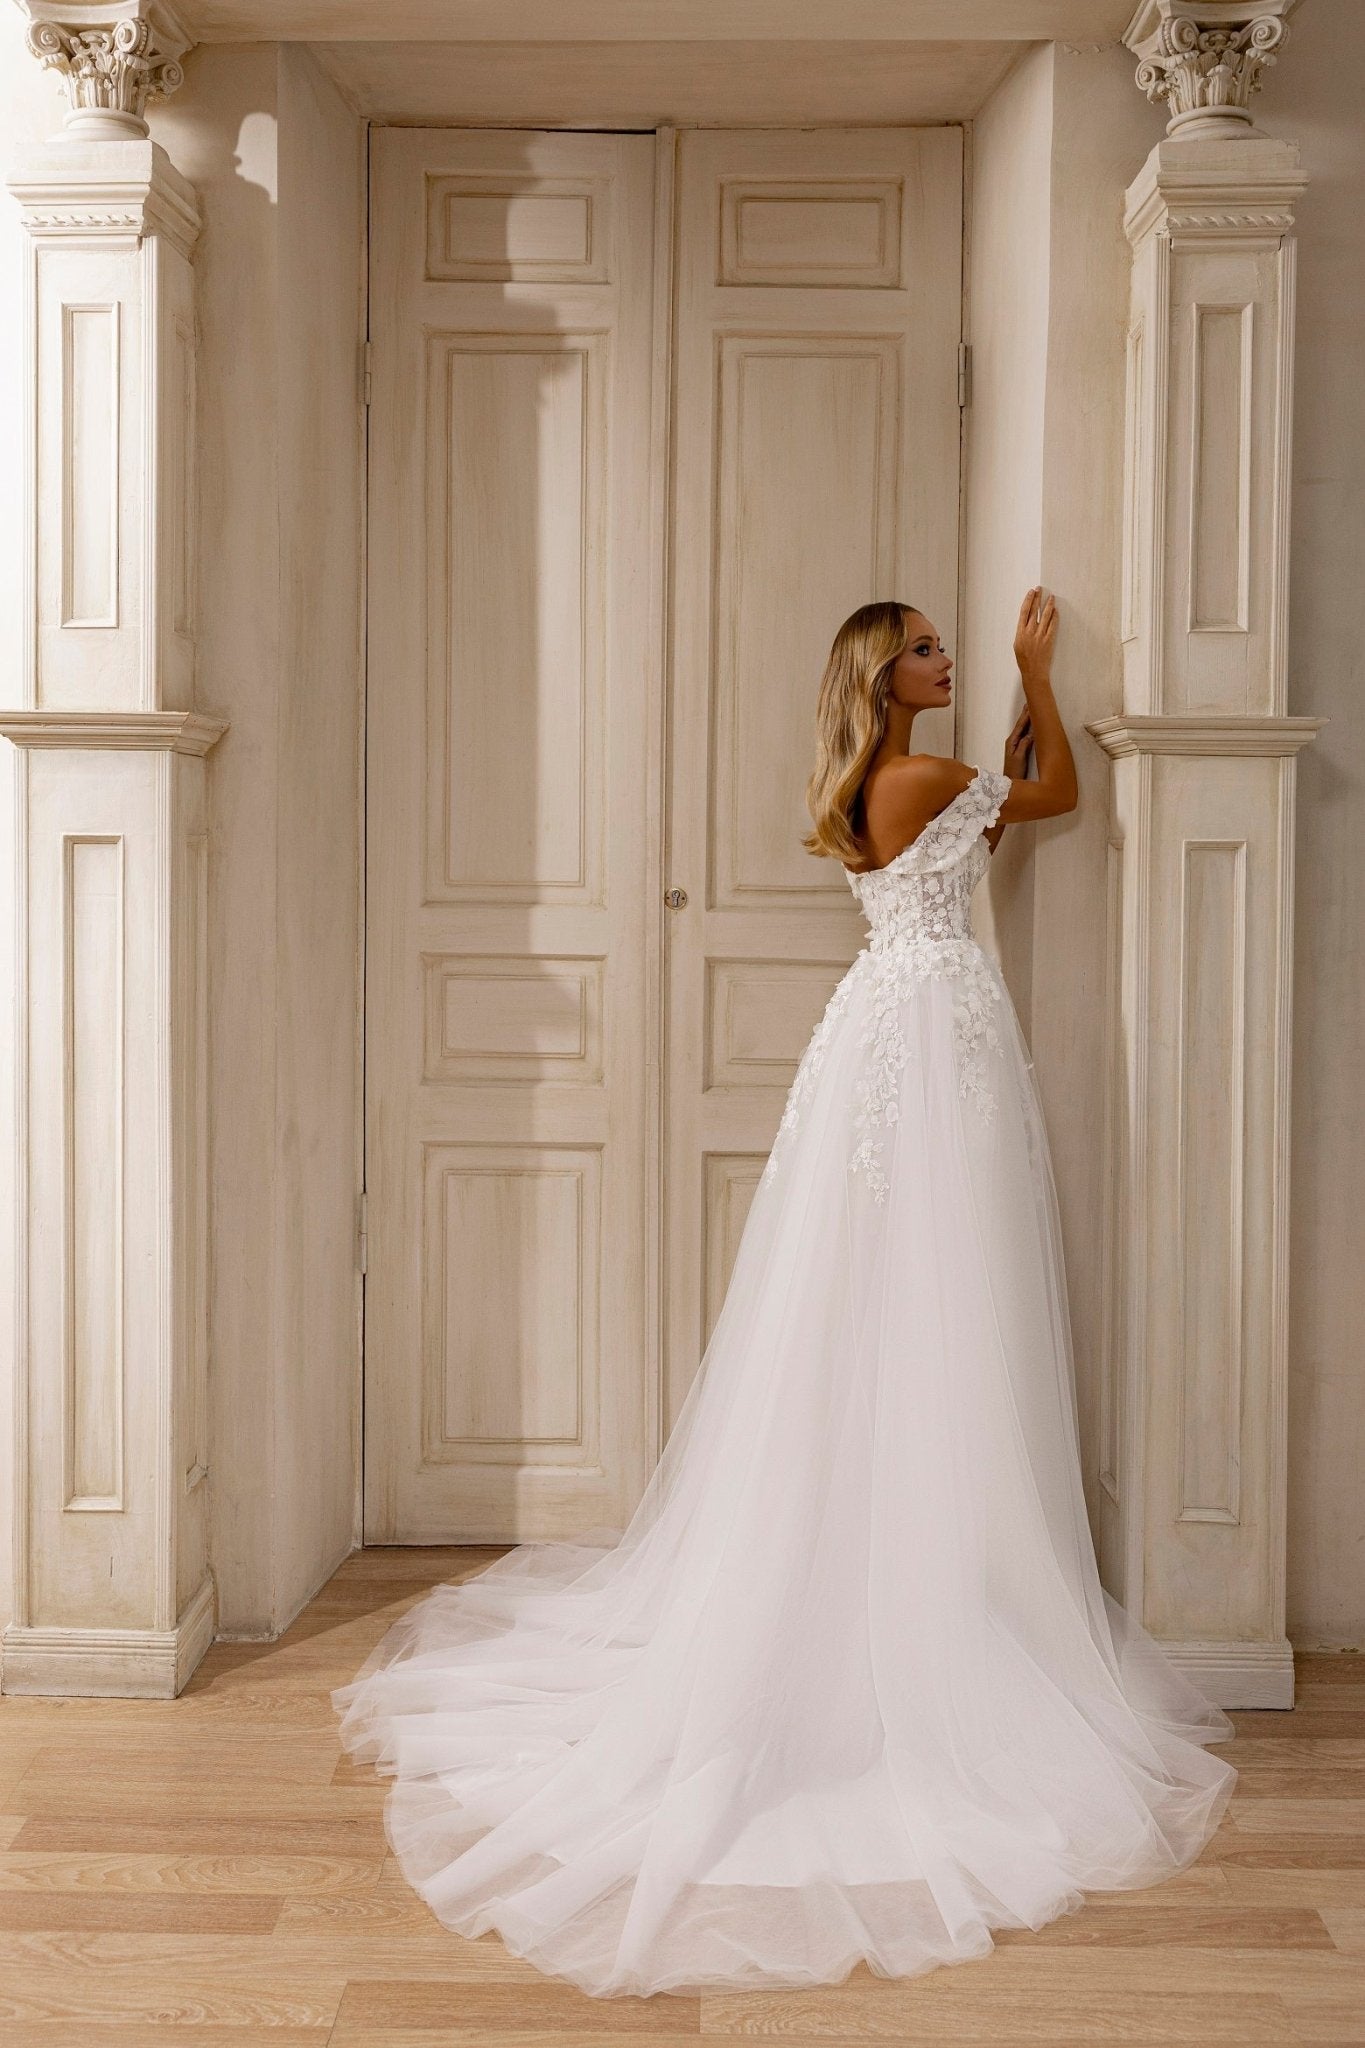 Off-Shoulder Floral Lace Wedding Dress with High Slit and Elegant Train - WonderlandByLilian